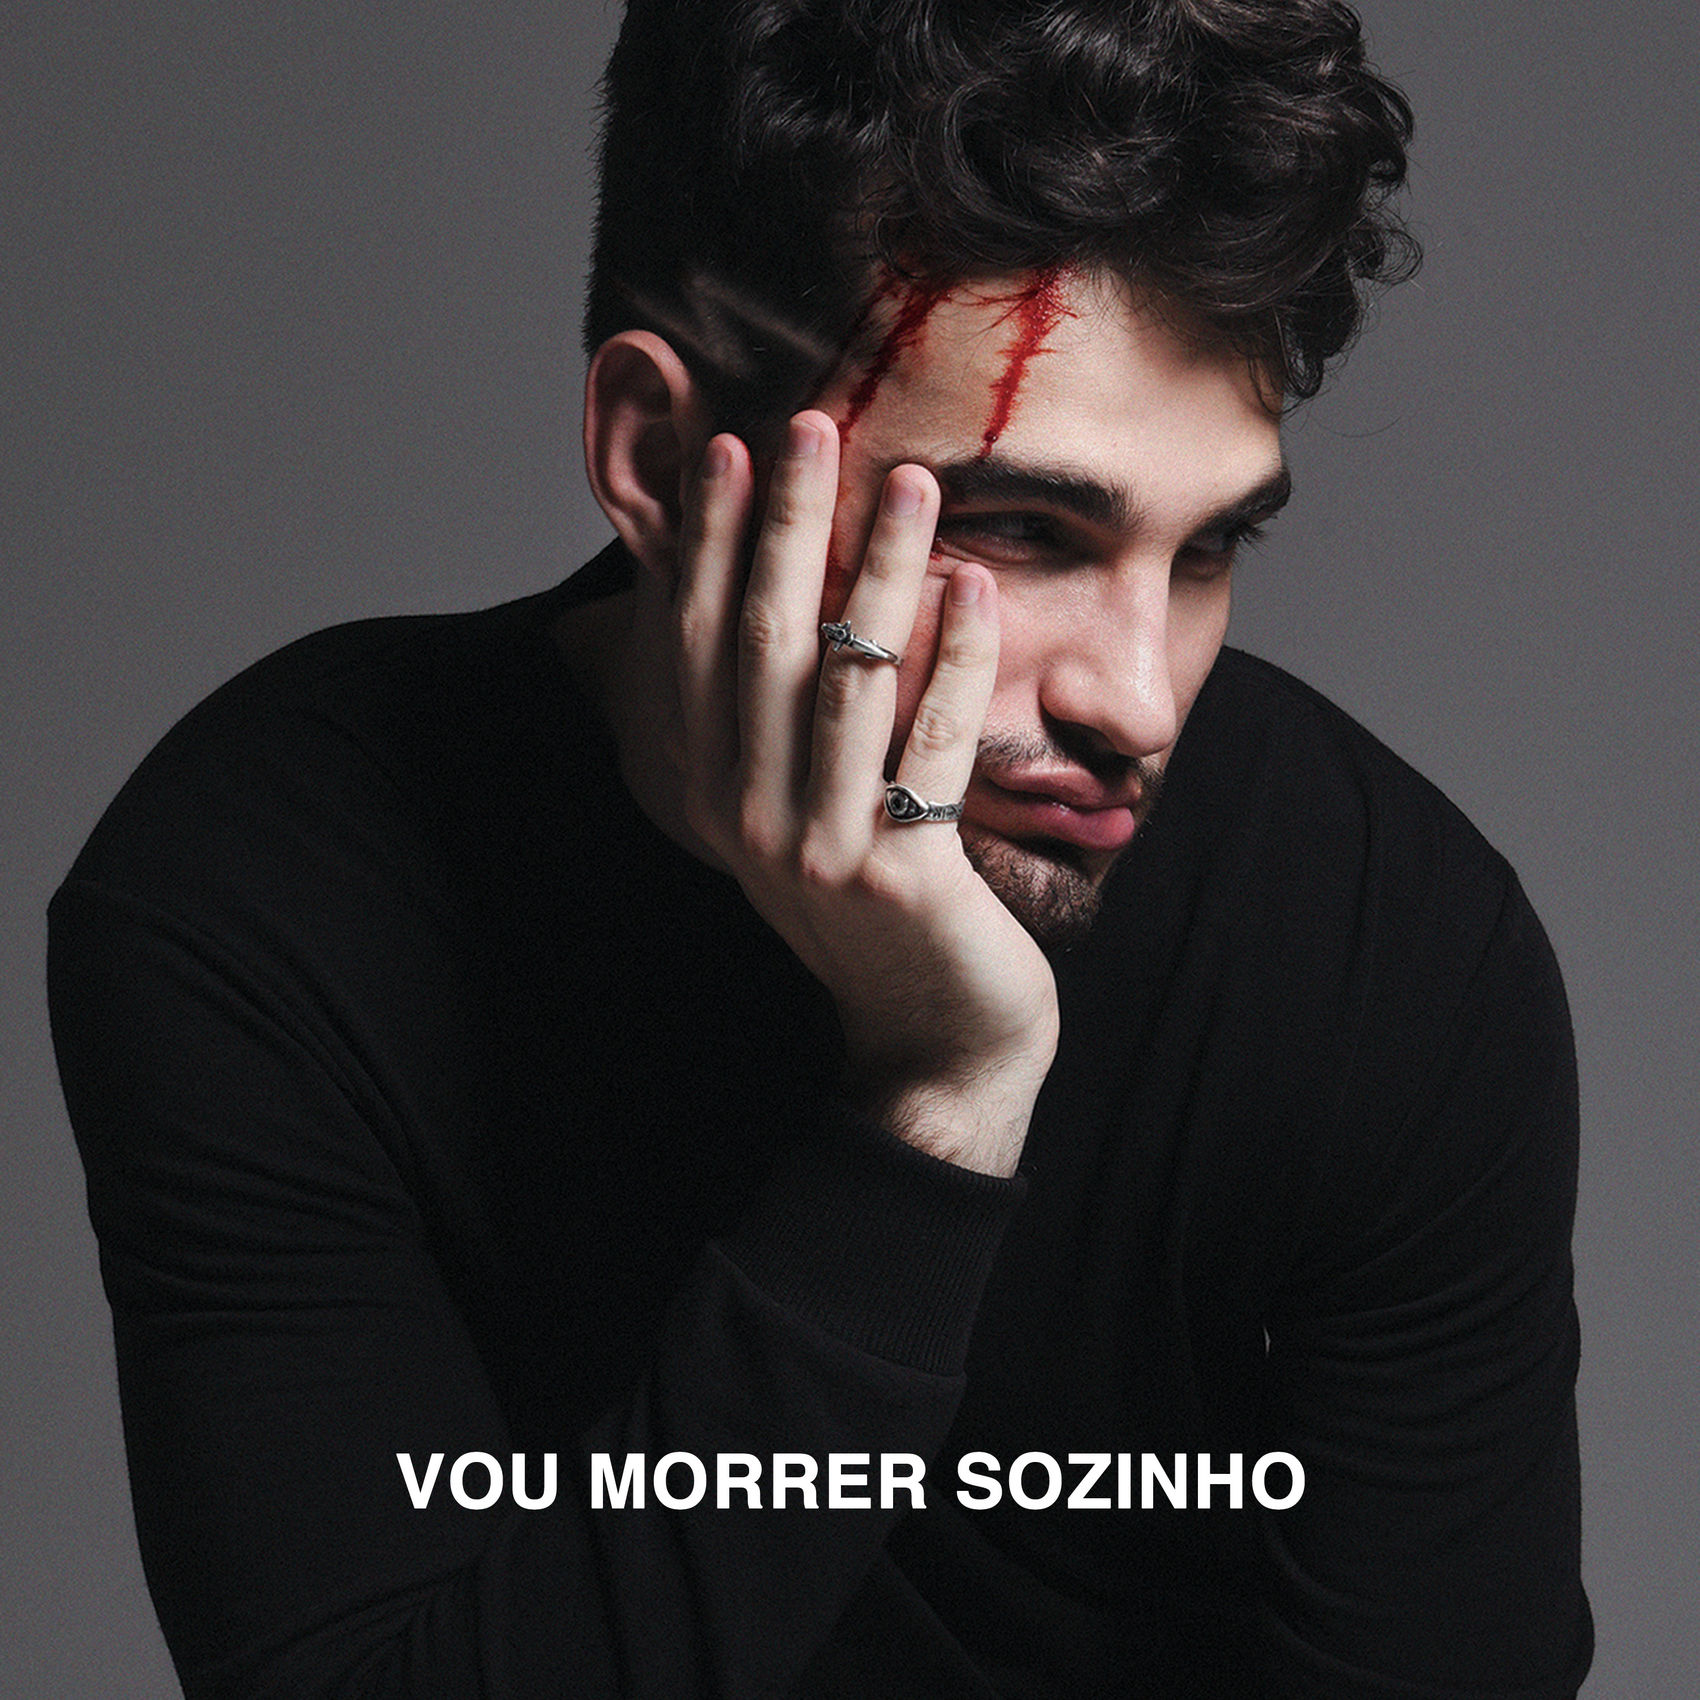 Jão Vou Morrer Sozinho Reviews Album Of The Year